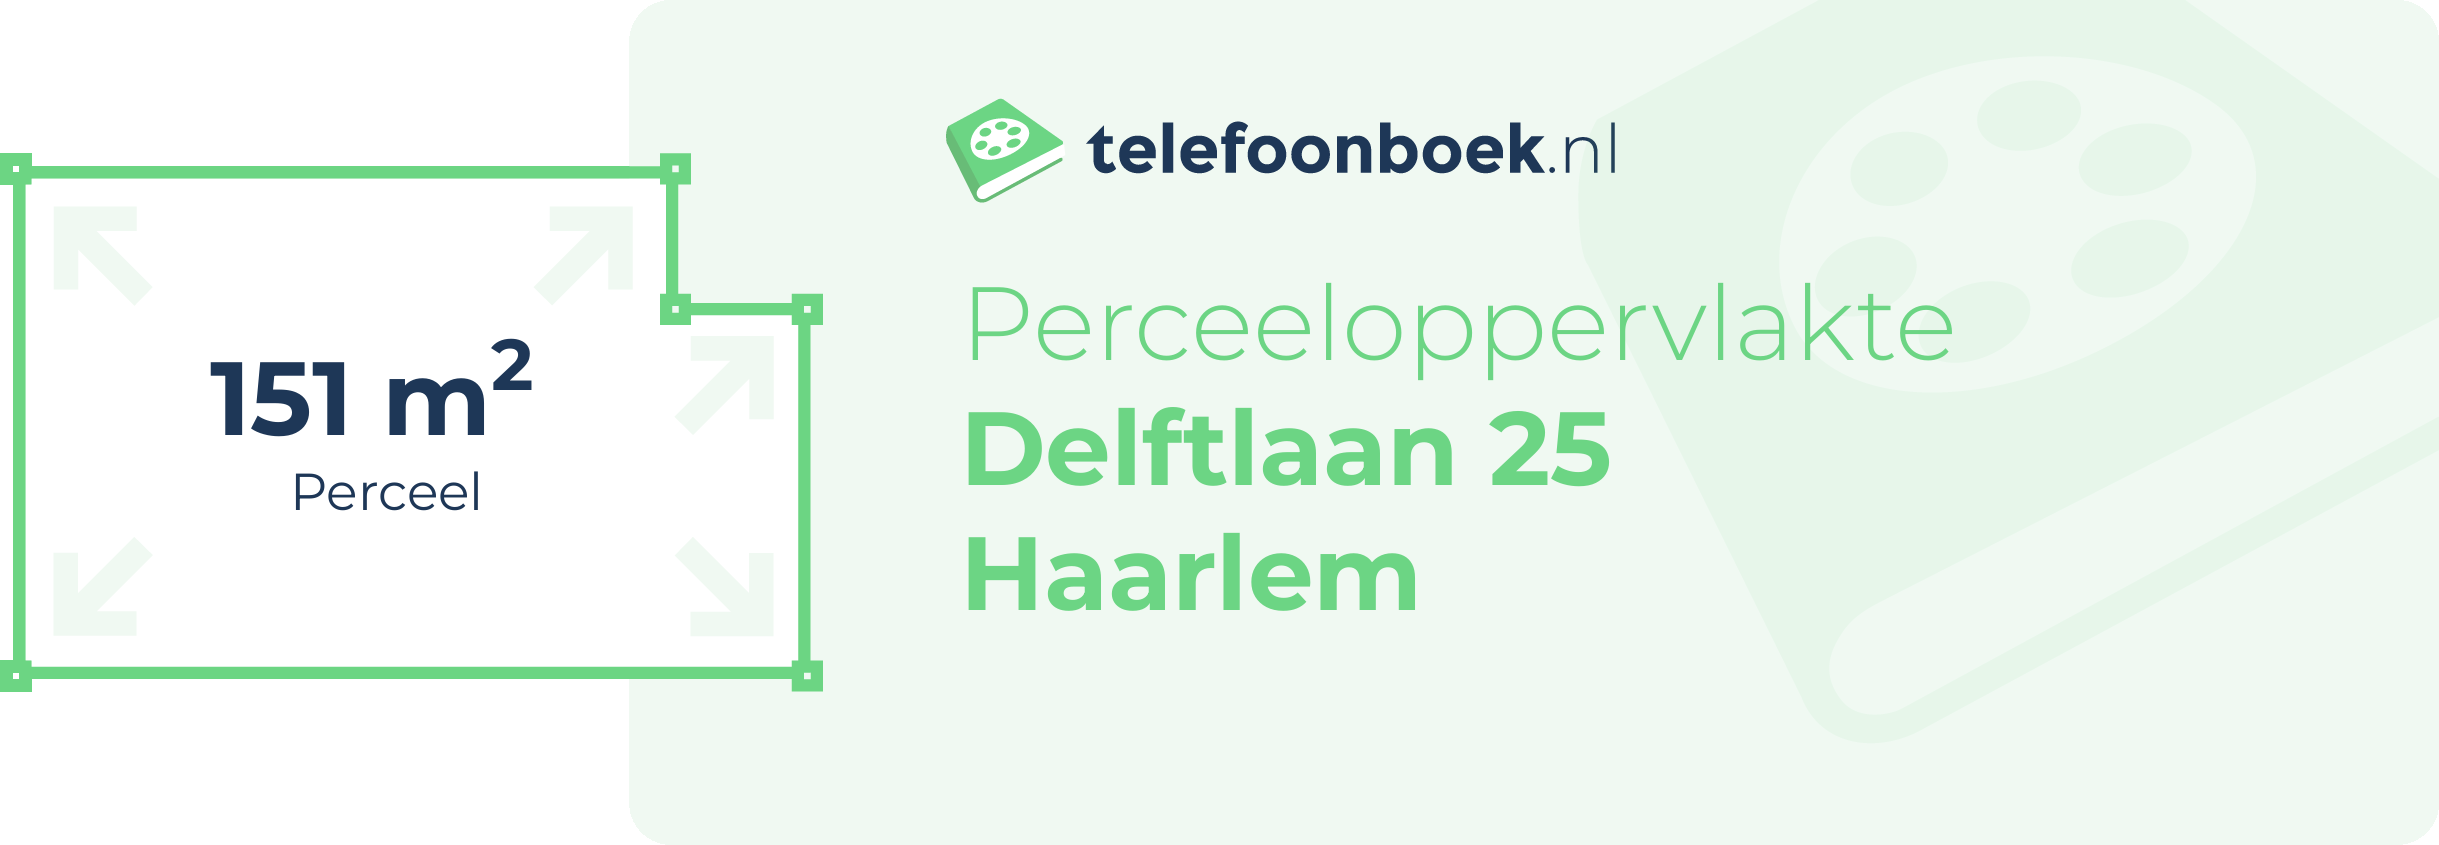 Perceeloppervlakte Delftlaan 25 Haarlem